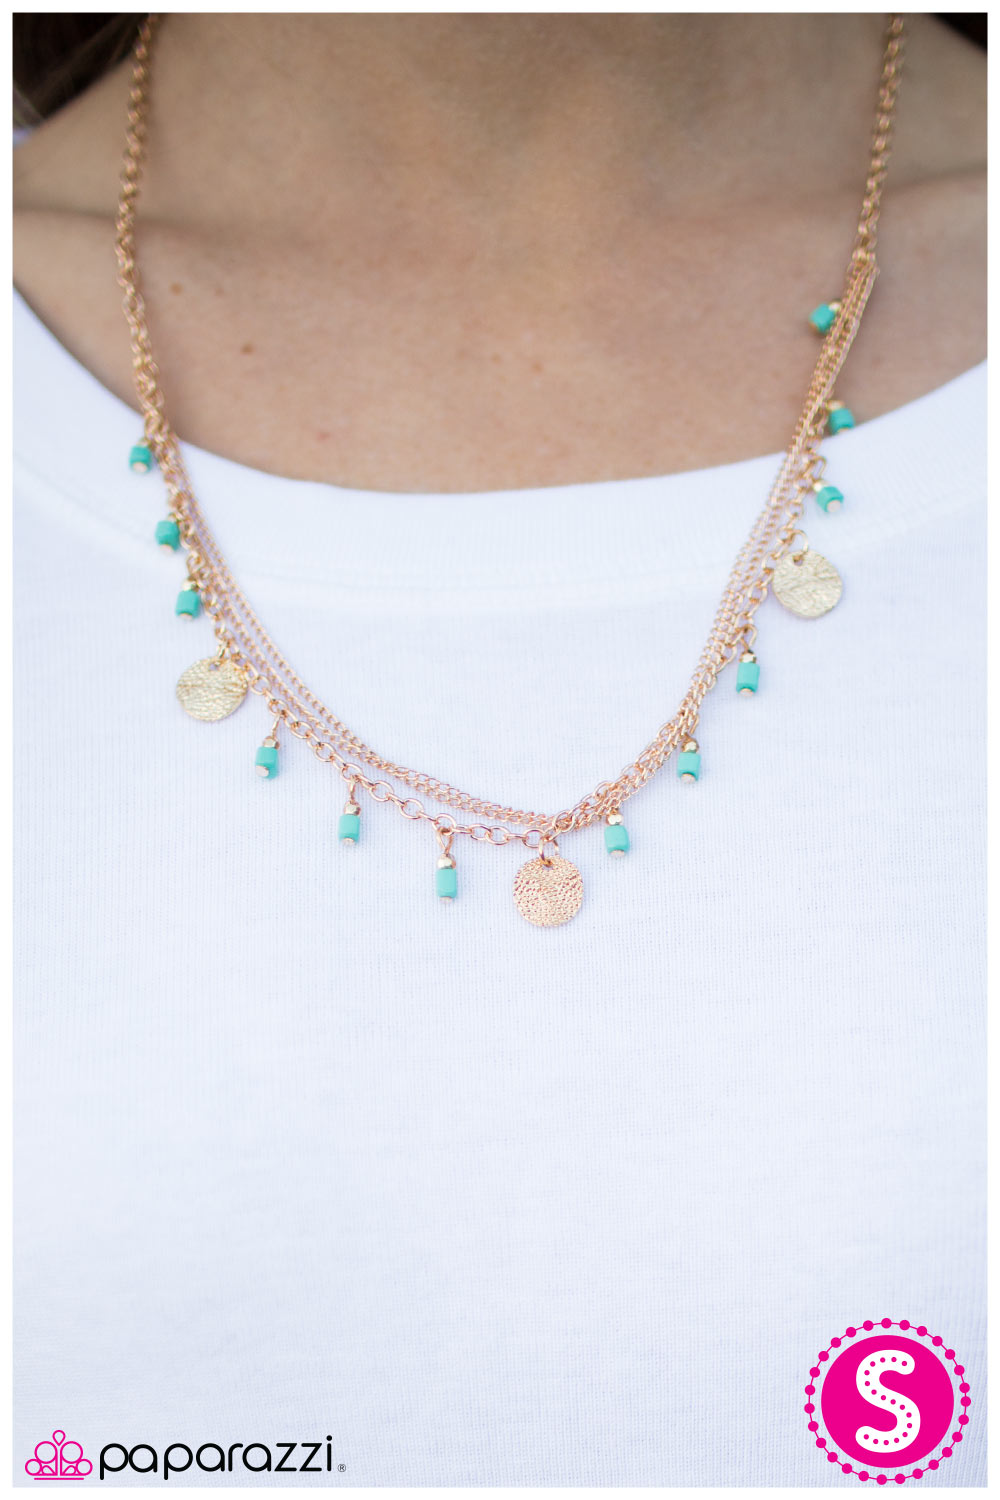 Marina Bay - Paparazzi necklace